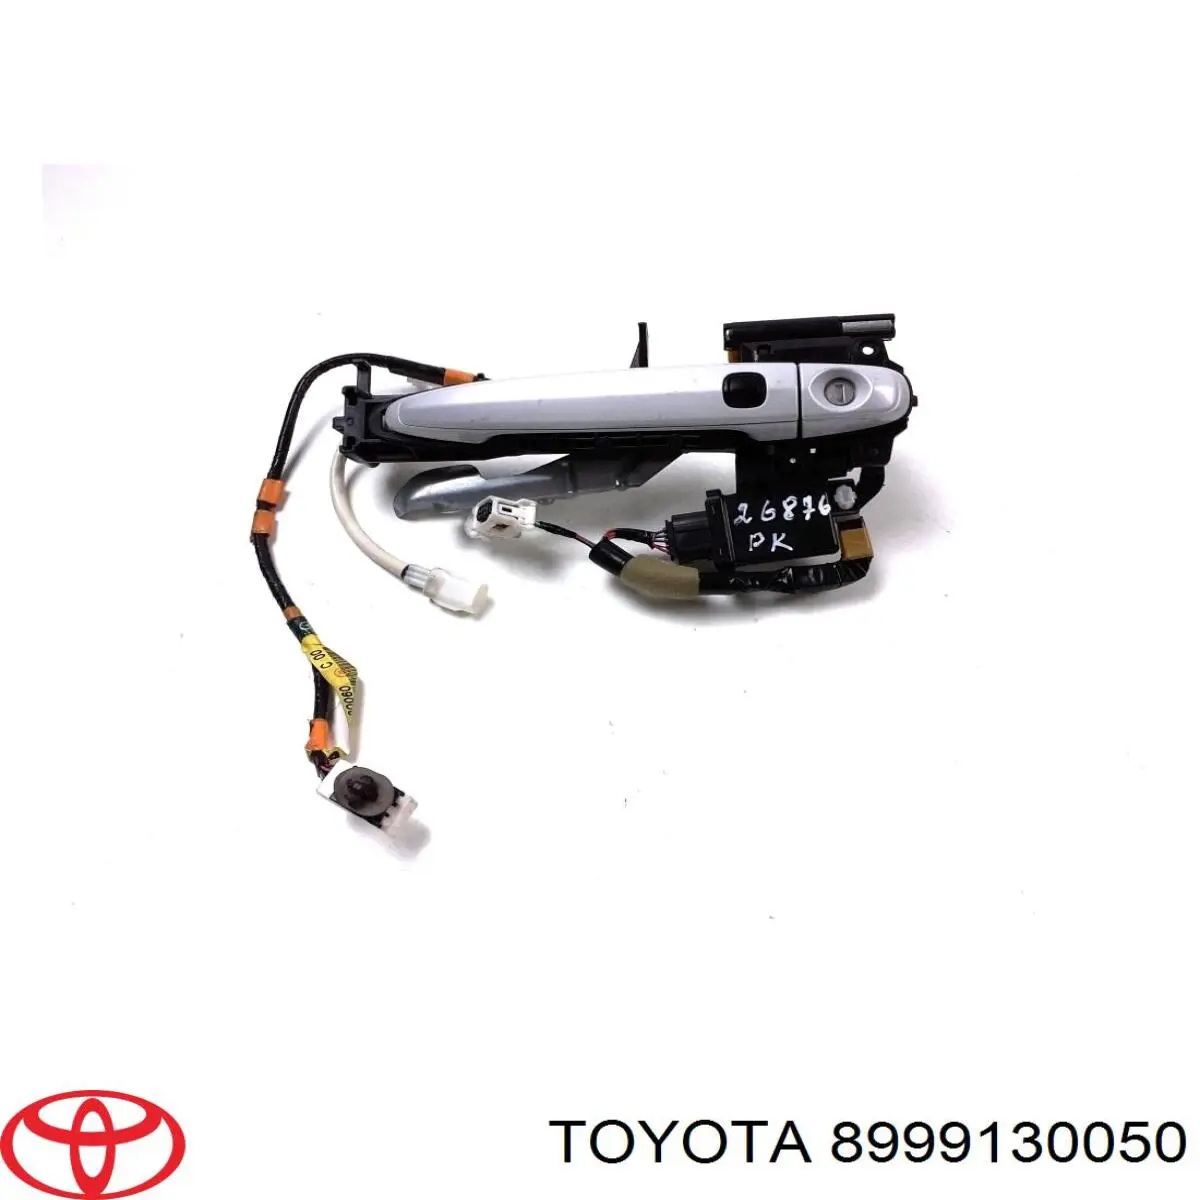 Sensor de acesso sem chave na porta (receptor de chave) para Toyota Camry (AHV40)